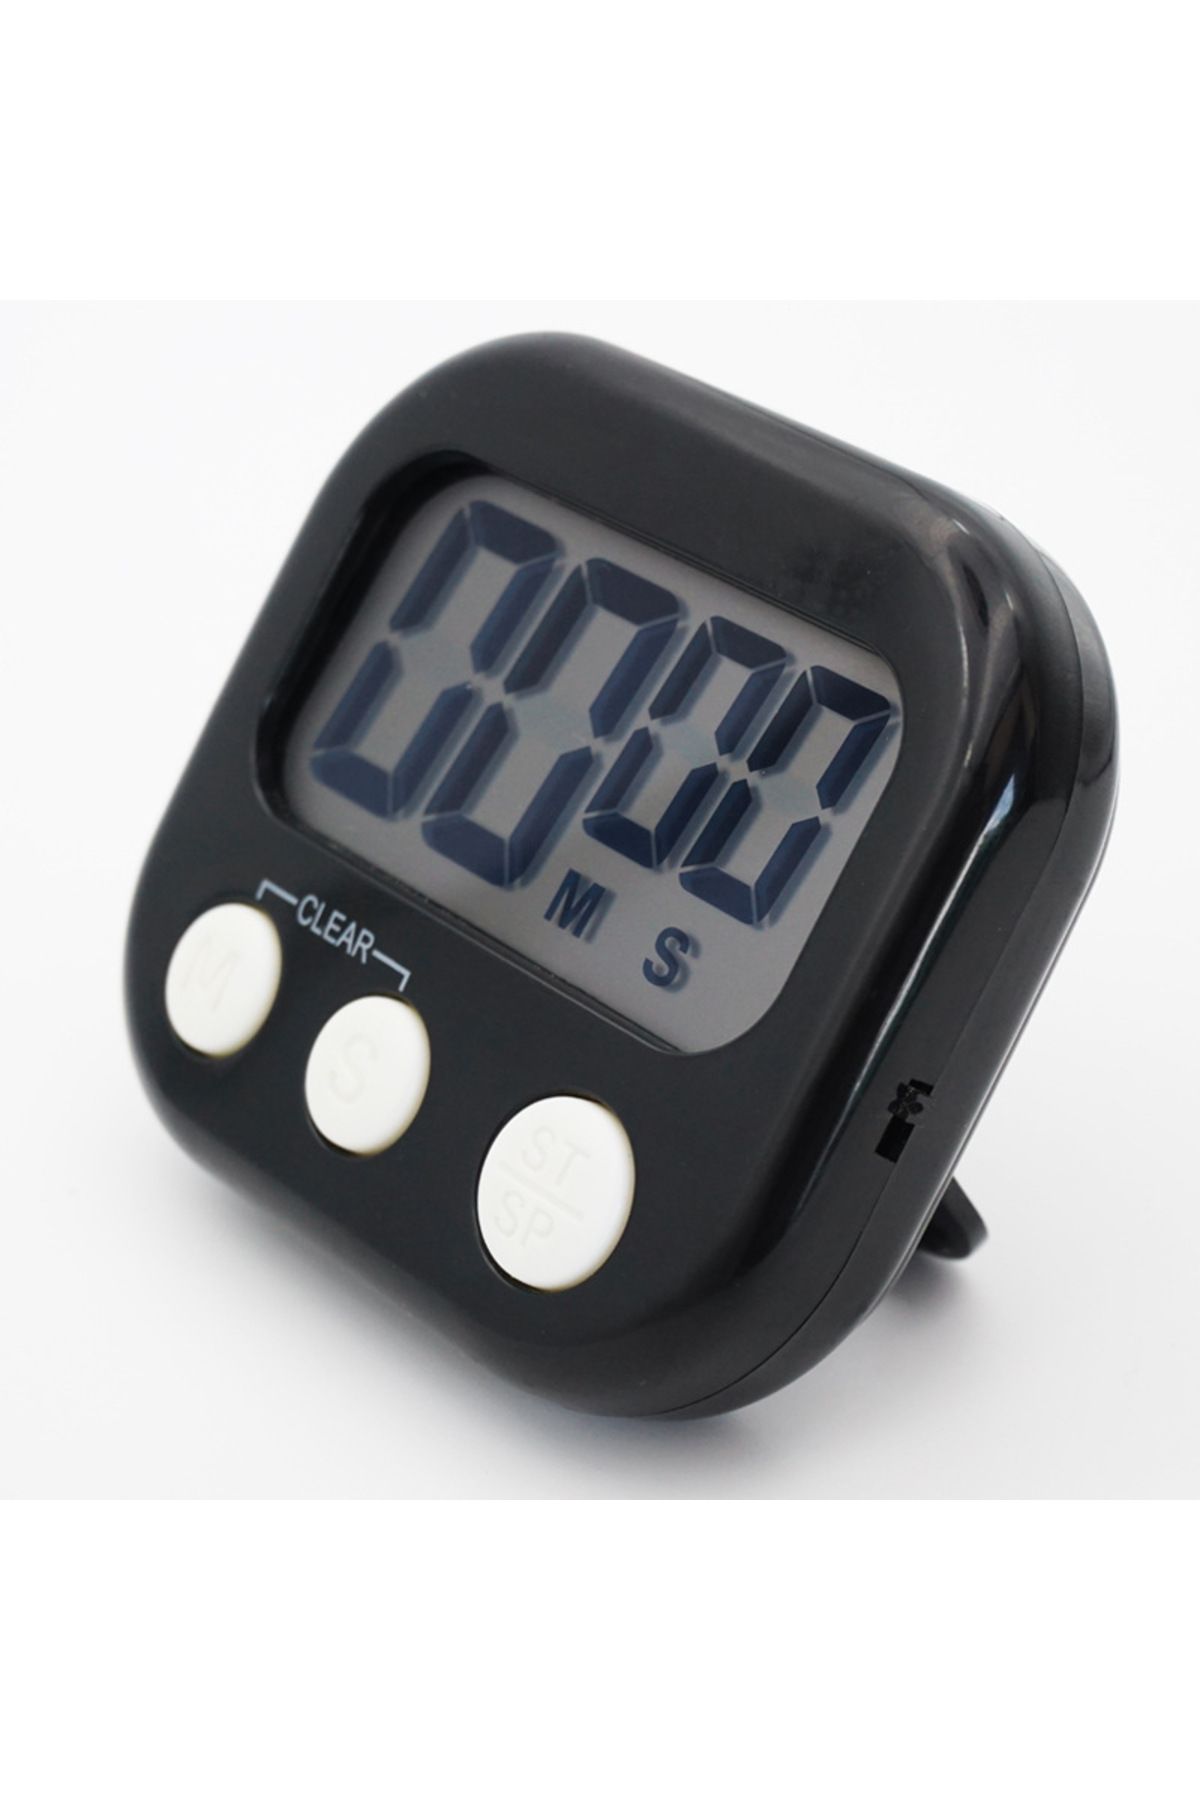 RICHIE Dijital timer zamanlayıcı geri sayım saati mutfak saati mini zamanlayıcı kronometre geri sayım